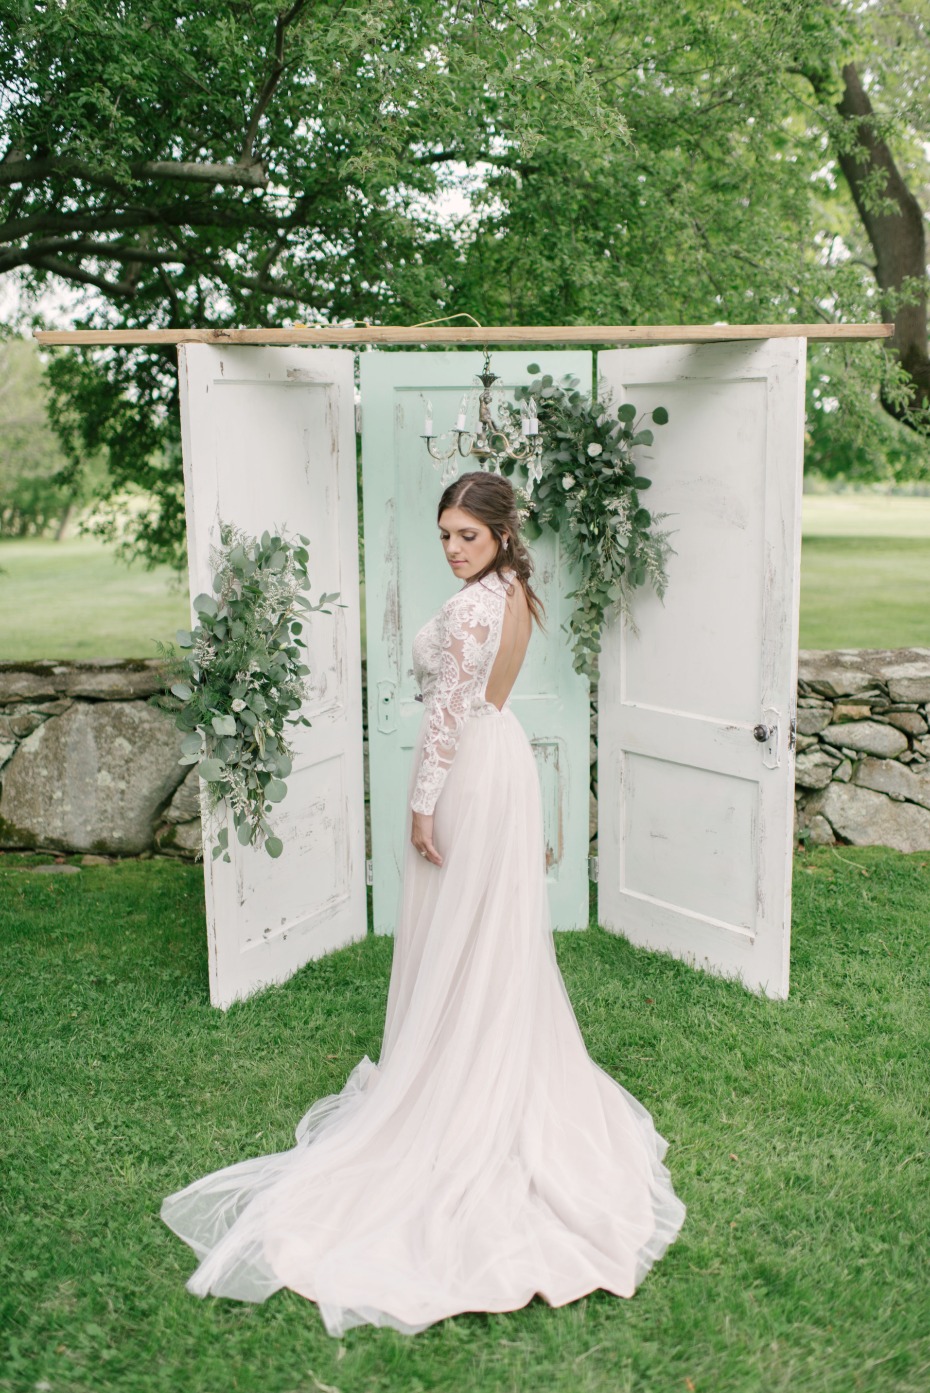 vintage style wedding door backdrop